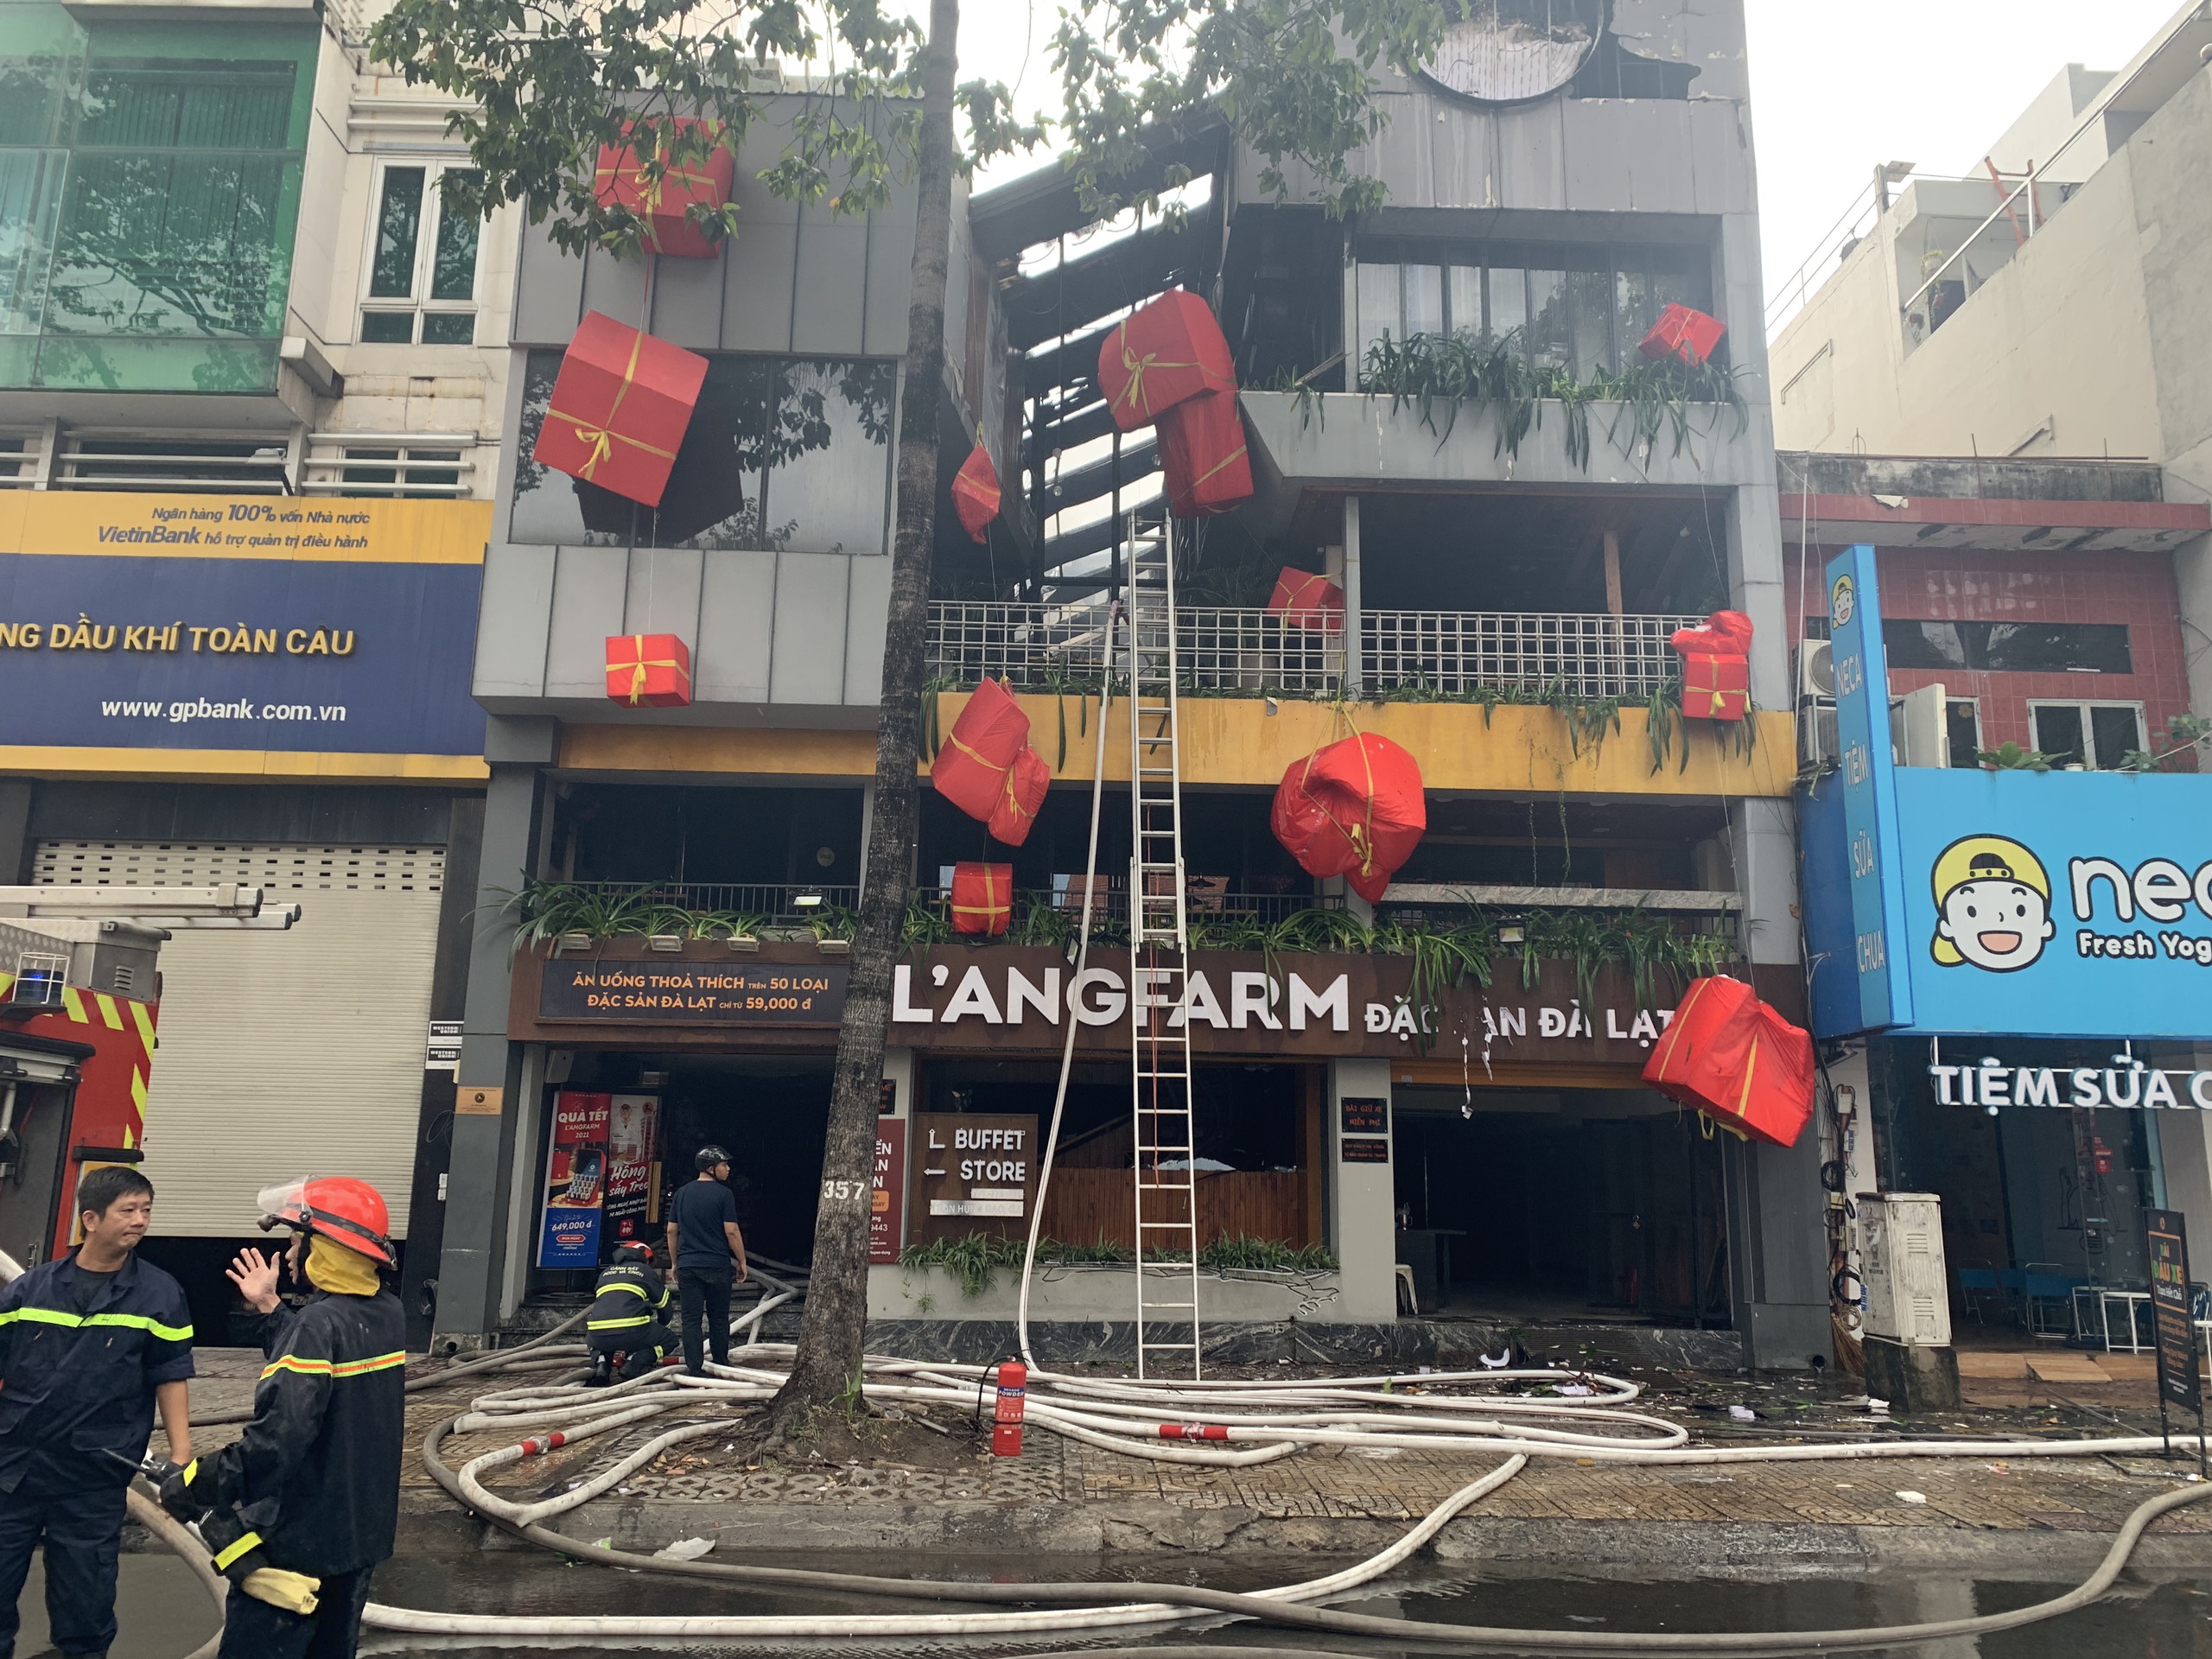 Cảnh sát giải cứu nam bảo vệ mắc kẹt trong vụ cháy cửa hàng Langfarm Buffet ở Sài Gòn - Ảnh 1.